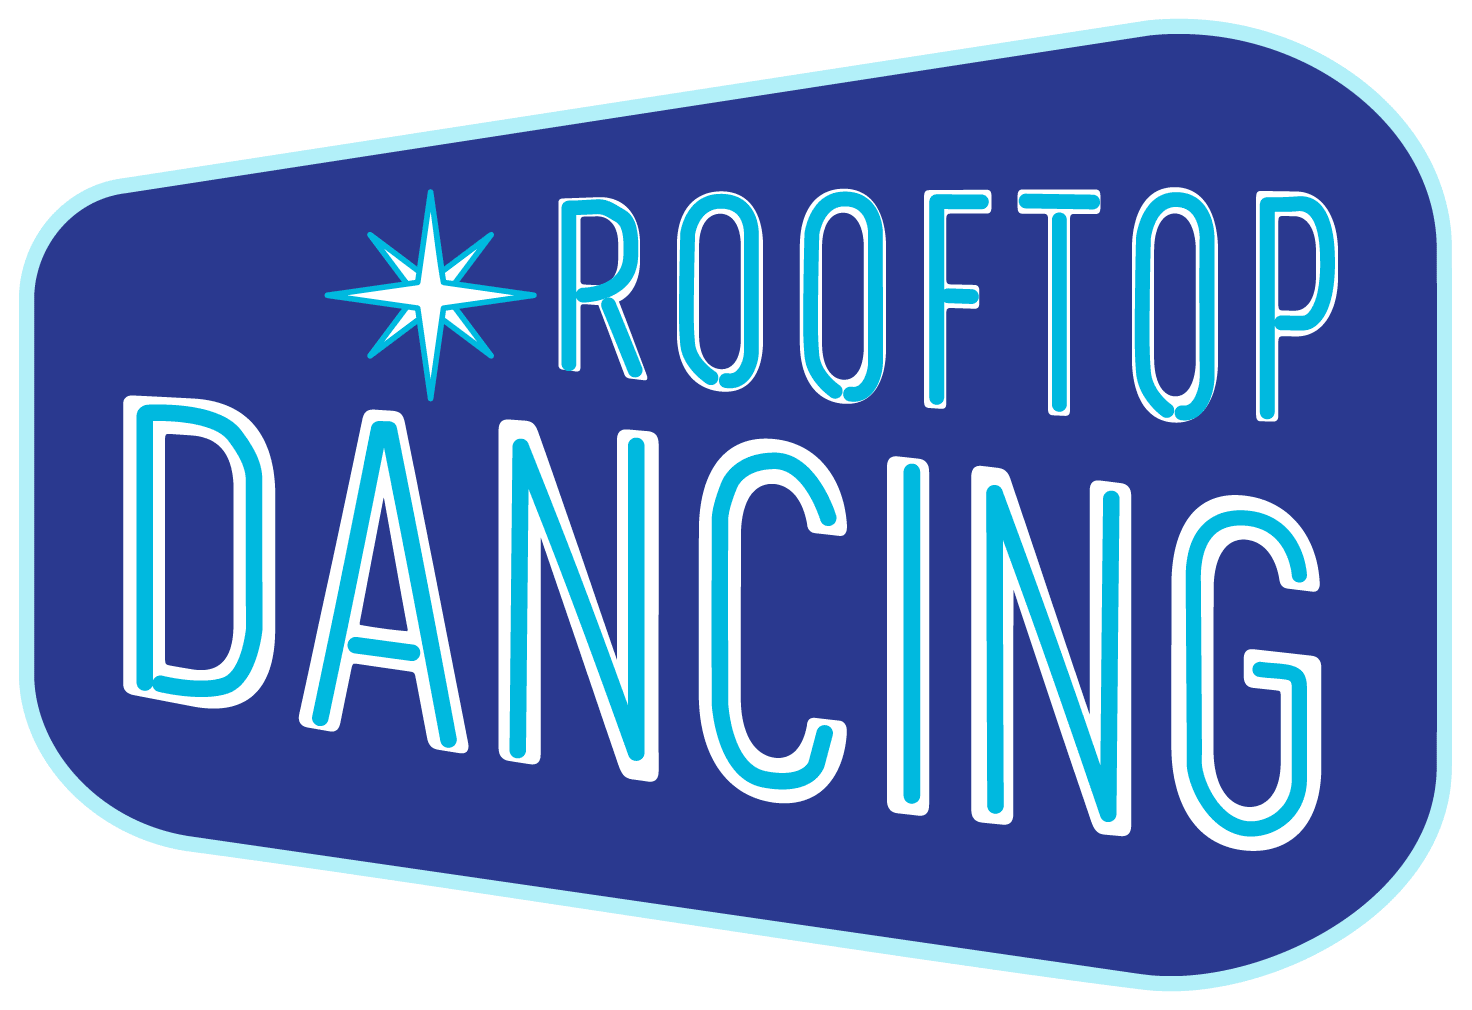 Nashville Rooftop Dancing